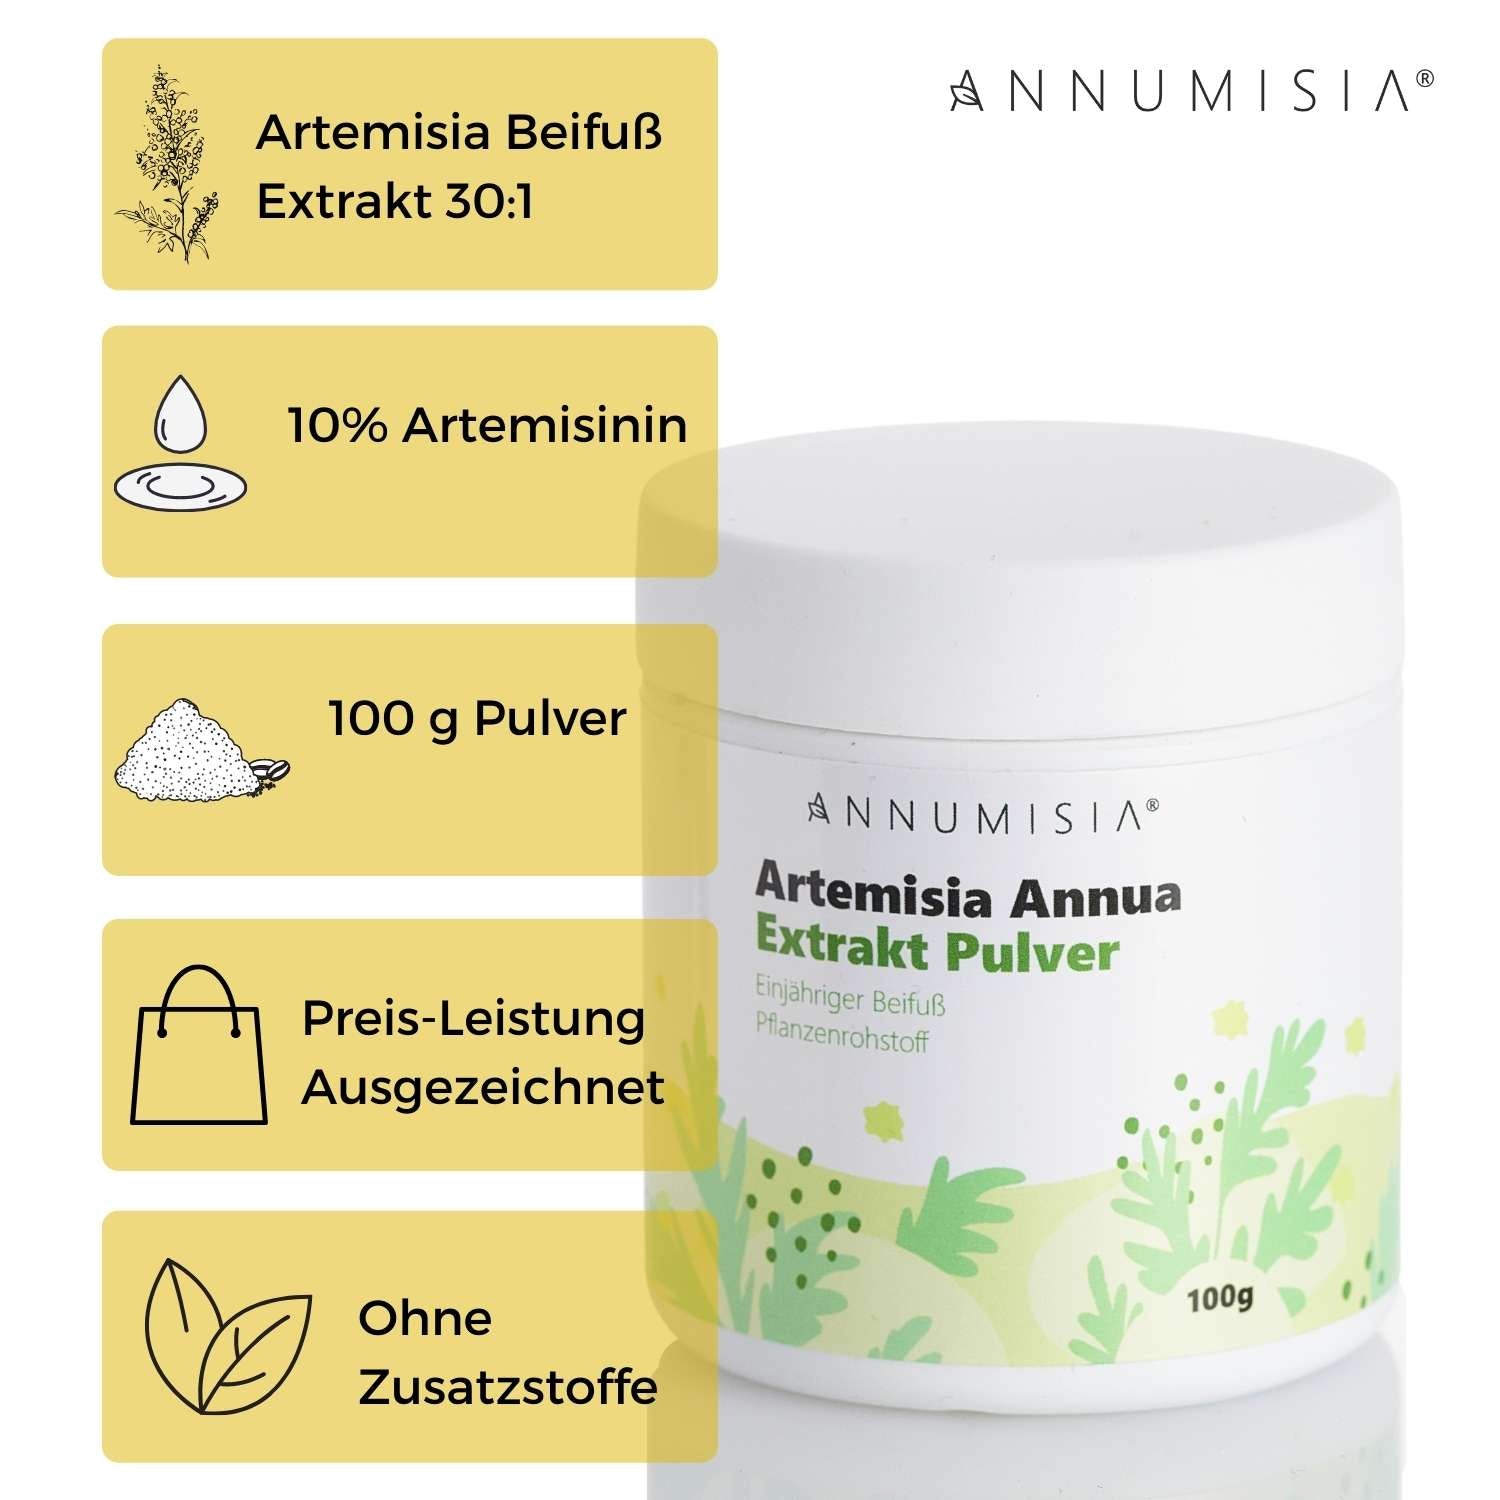 Artemisia Annua Extrakt Pulver 10% Artemisinin